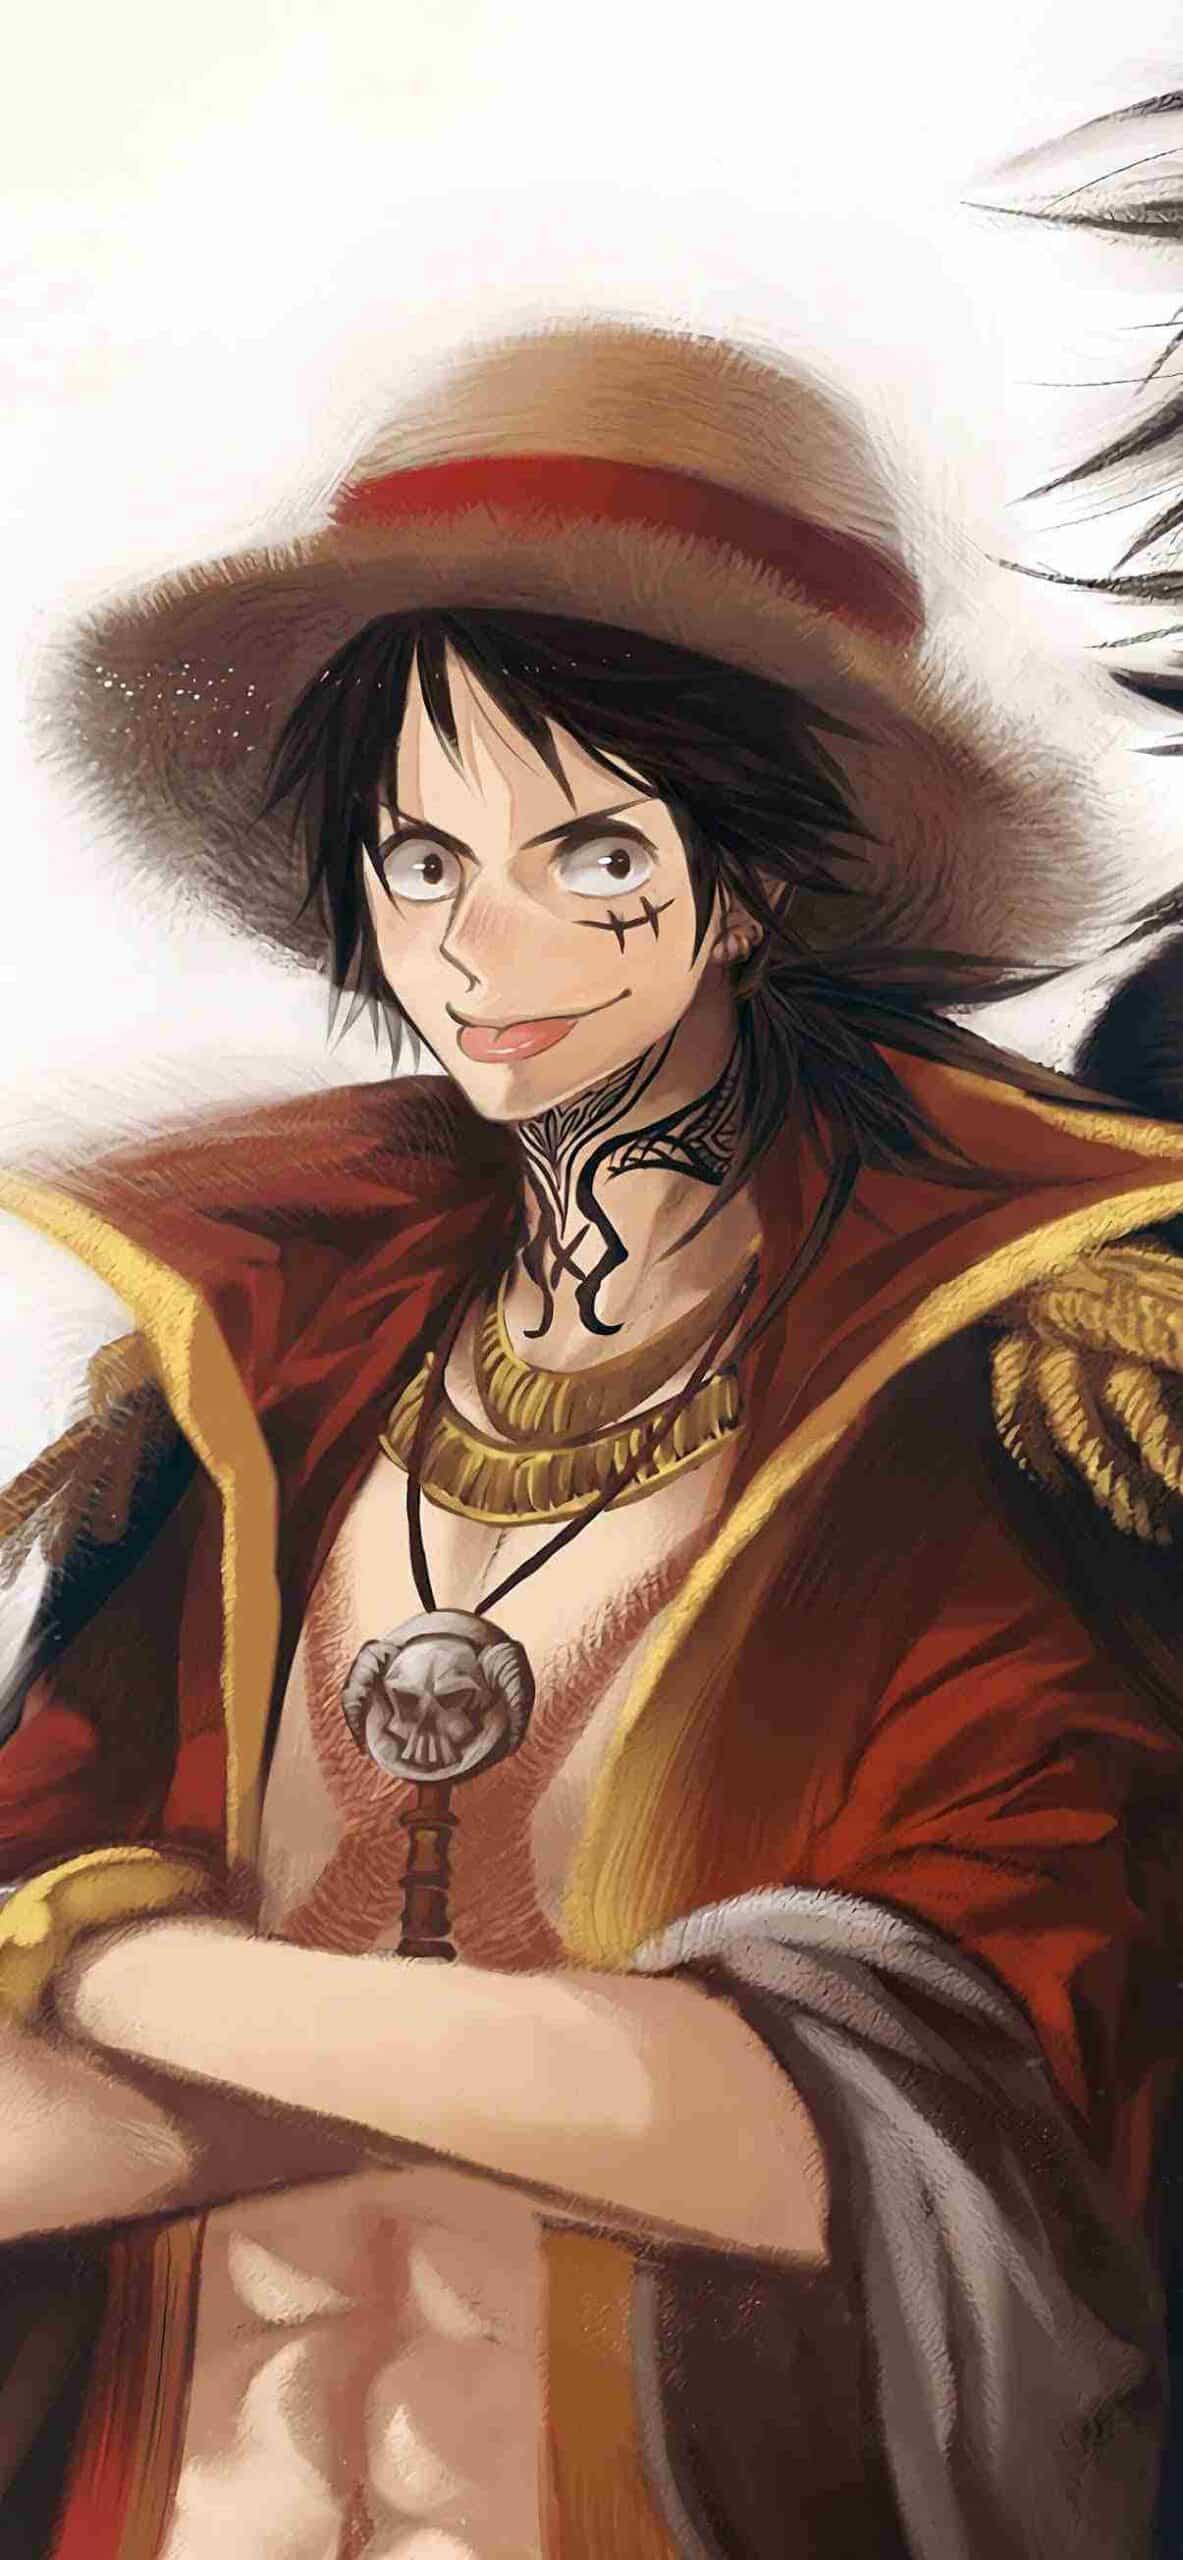 Tải Hình Nền One Piece 4K